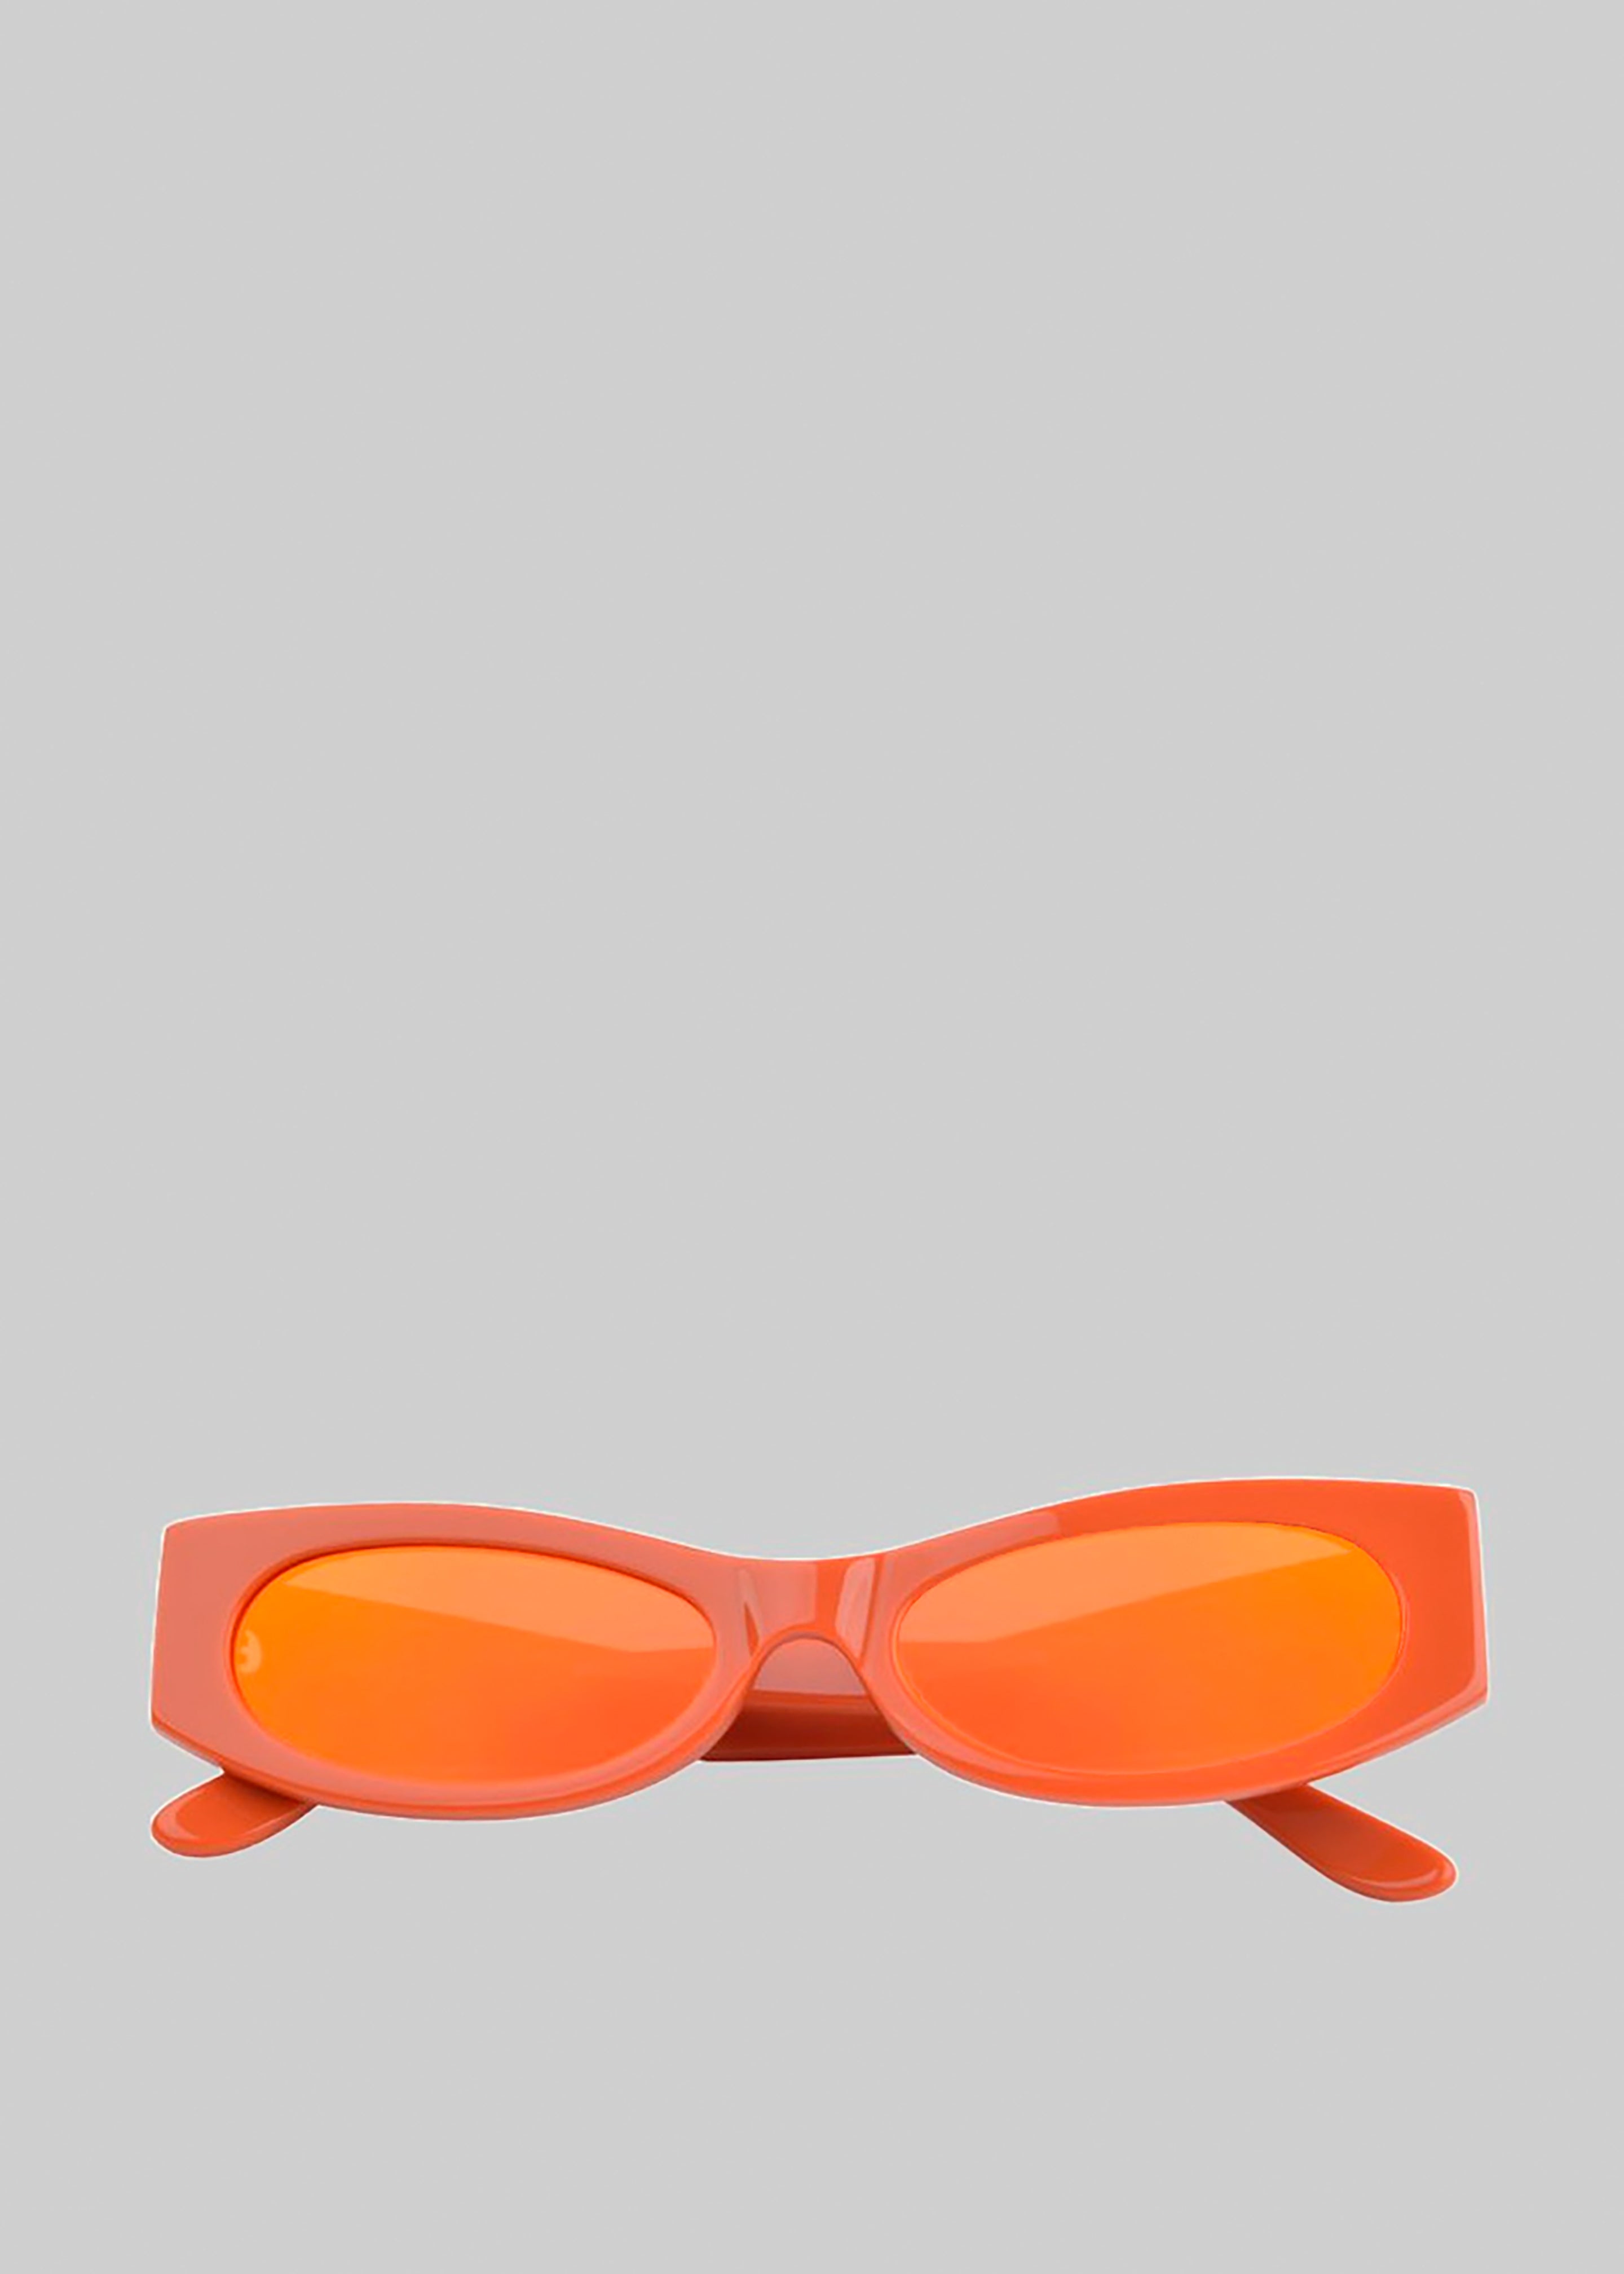 Karen Wazen Ciara Sunglasses - Carrot - 5